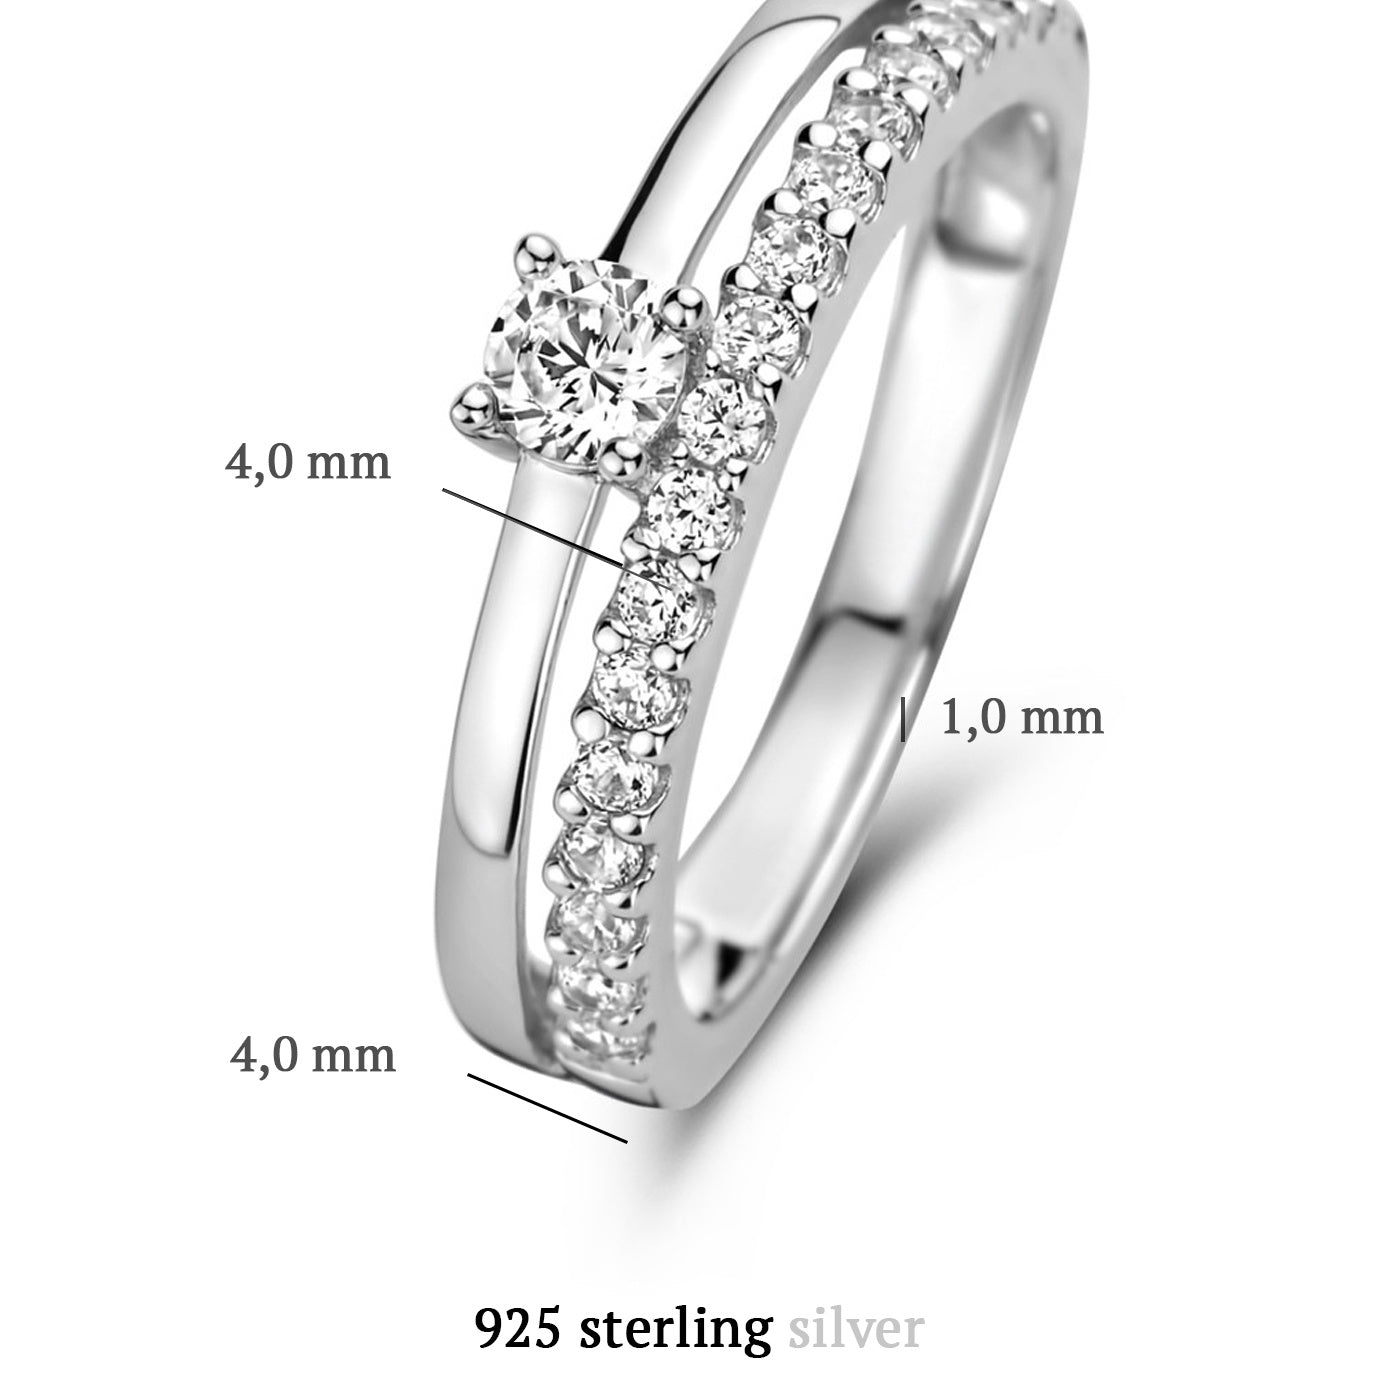 Ponte Vecchio Uffizi 925 sterling silver ring with zirconia stones